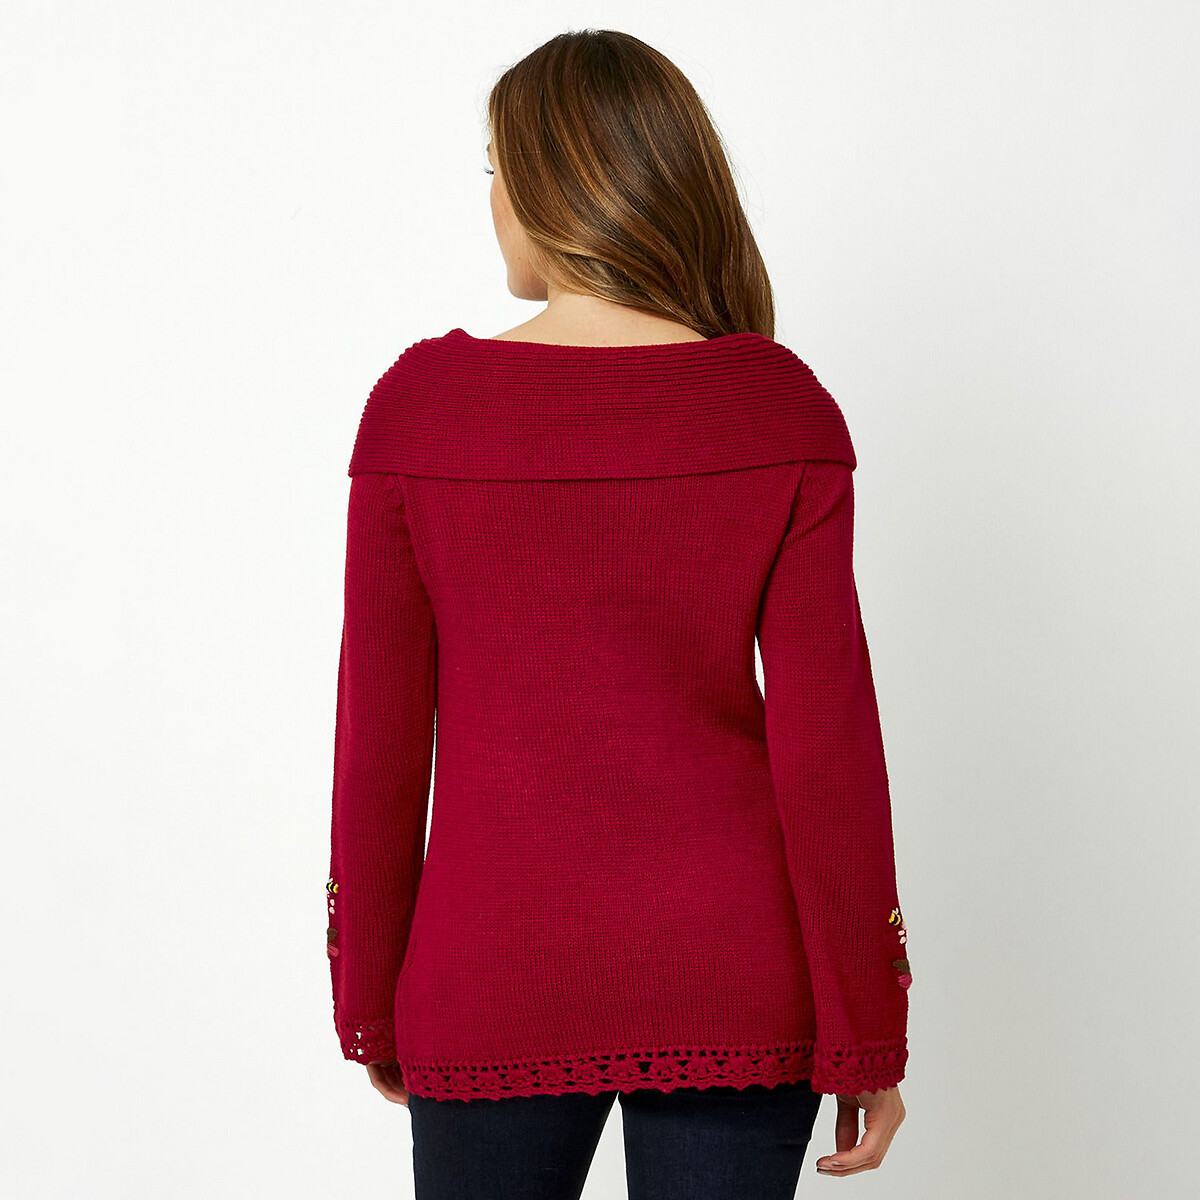 Пуловер La Redoute Из плетеного трикотажа с вышивкой 36 (FR) - 42 (RUS) красный, размер 36 (FR) - 42 (RUS) Из плетеного трикотажа с вышивкой 36 (FR) - 42 (RUS) красный - фото 2